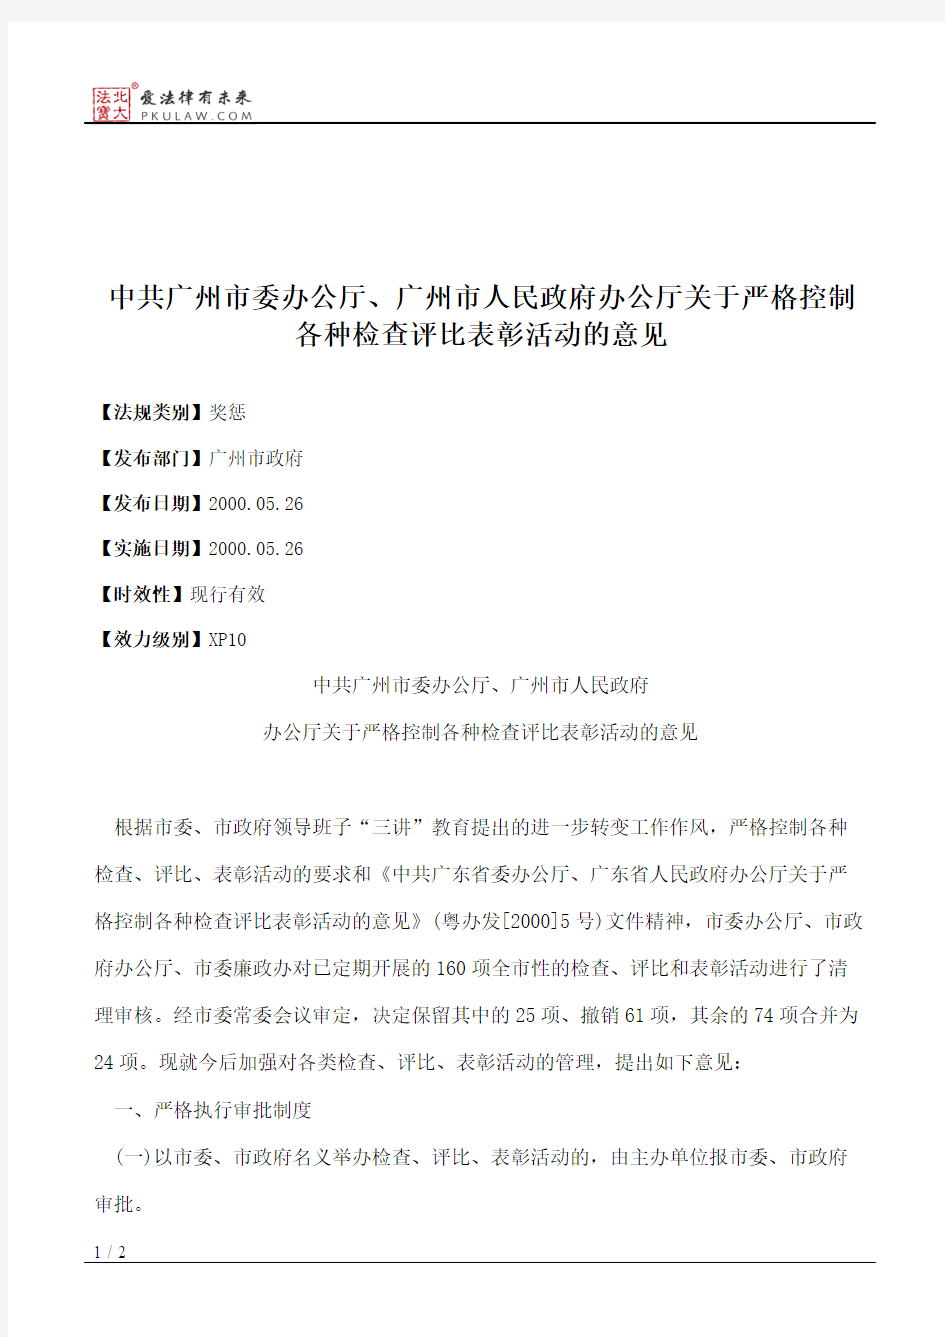 中共广州市委办公厅、广州市人民政府办公厅关于严格控制各种检查